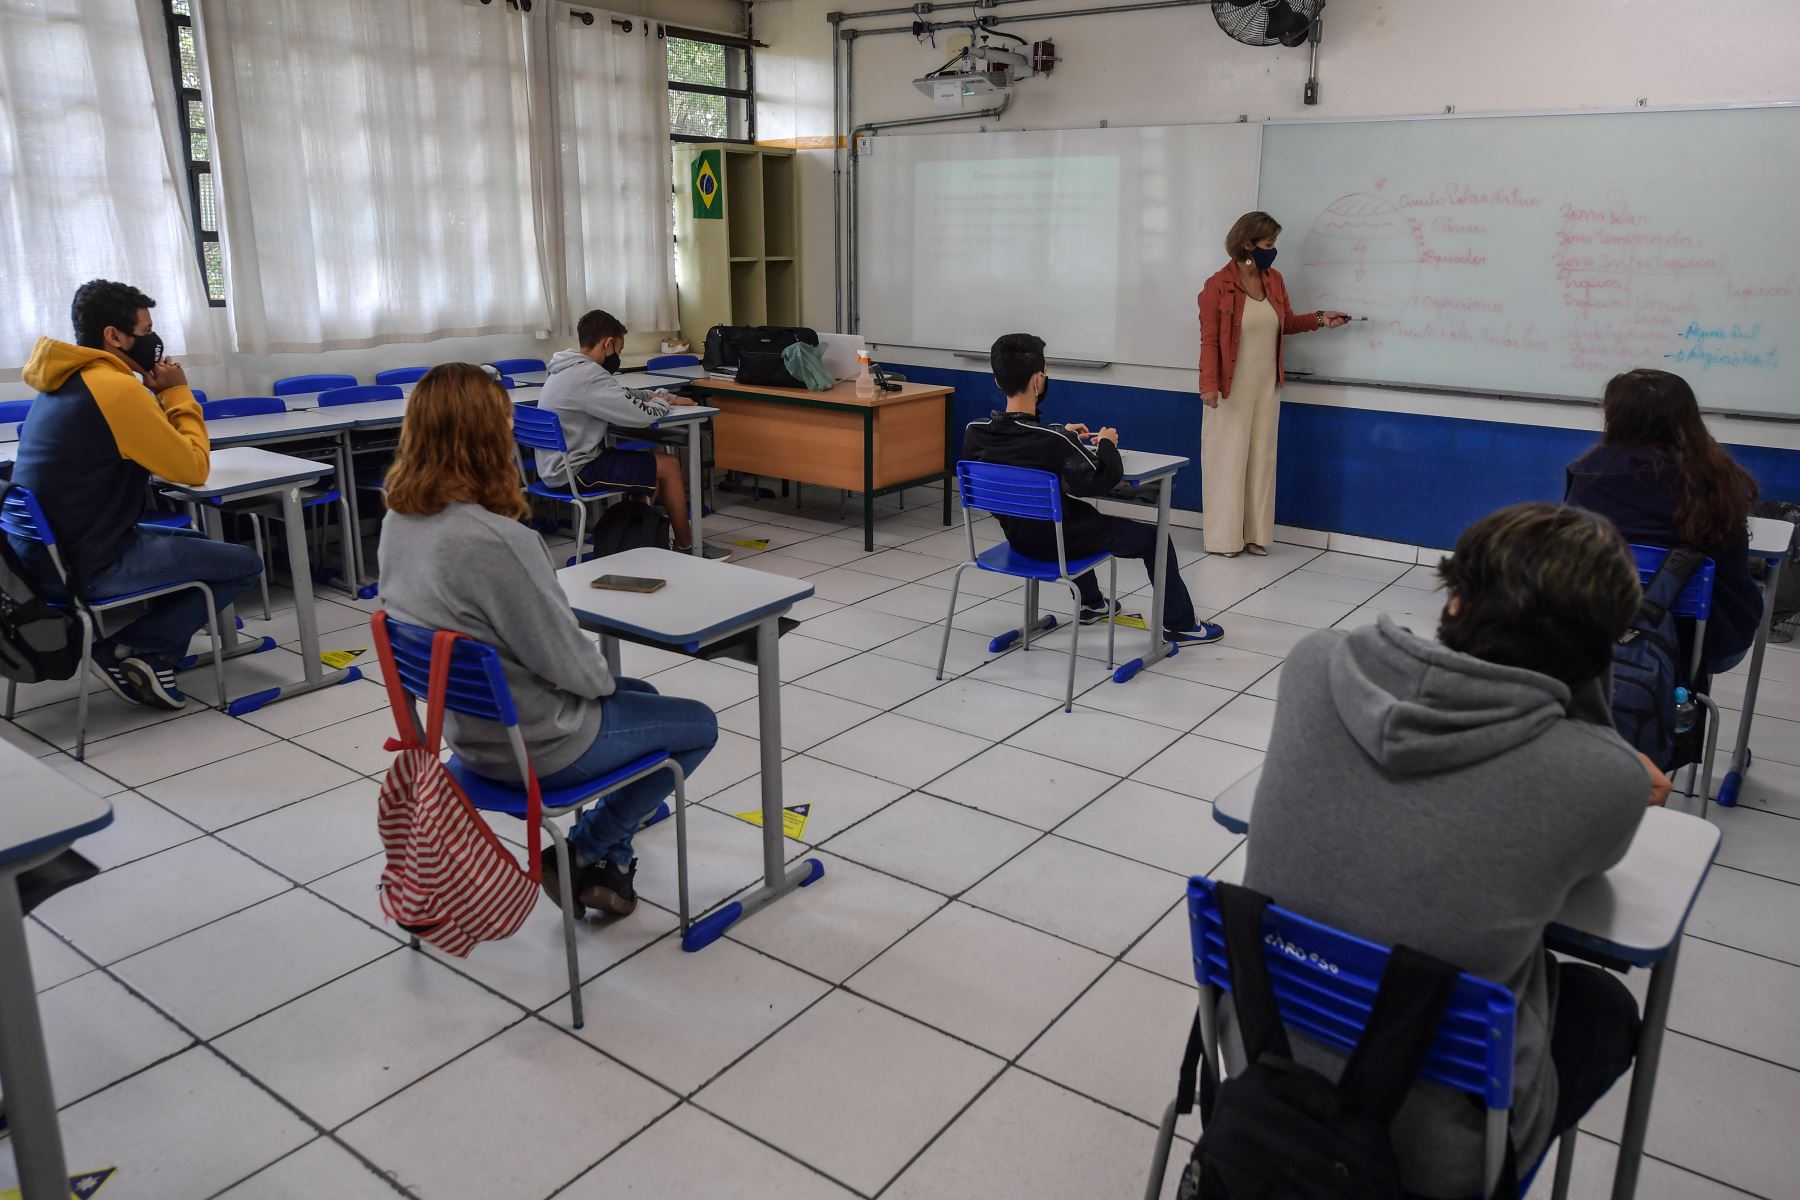 Los estudiantes asisten a una clase en la escuela Milton da Silva Rodrigues, en medio de la nueva pandemia del coronavirus, en el estado de Sao Paulo. Foto: AFP